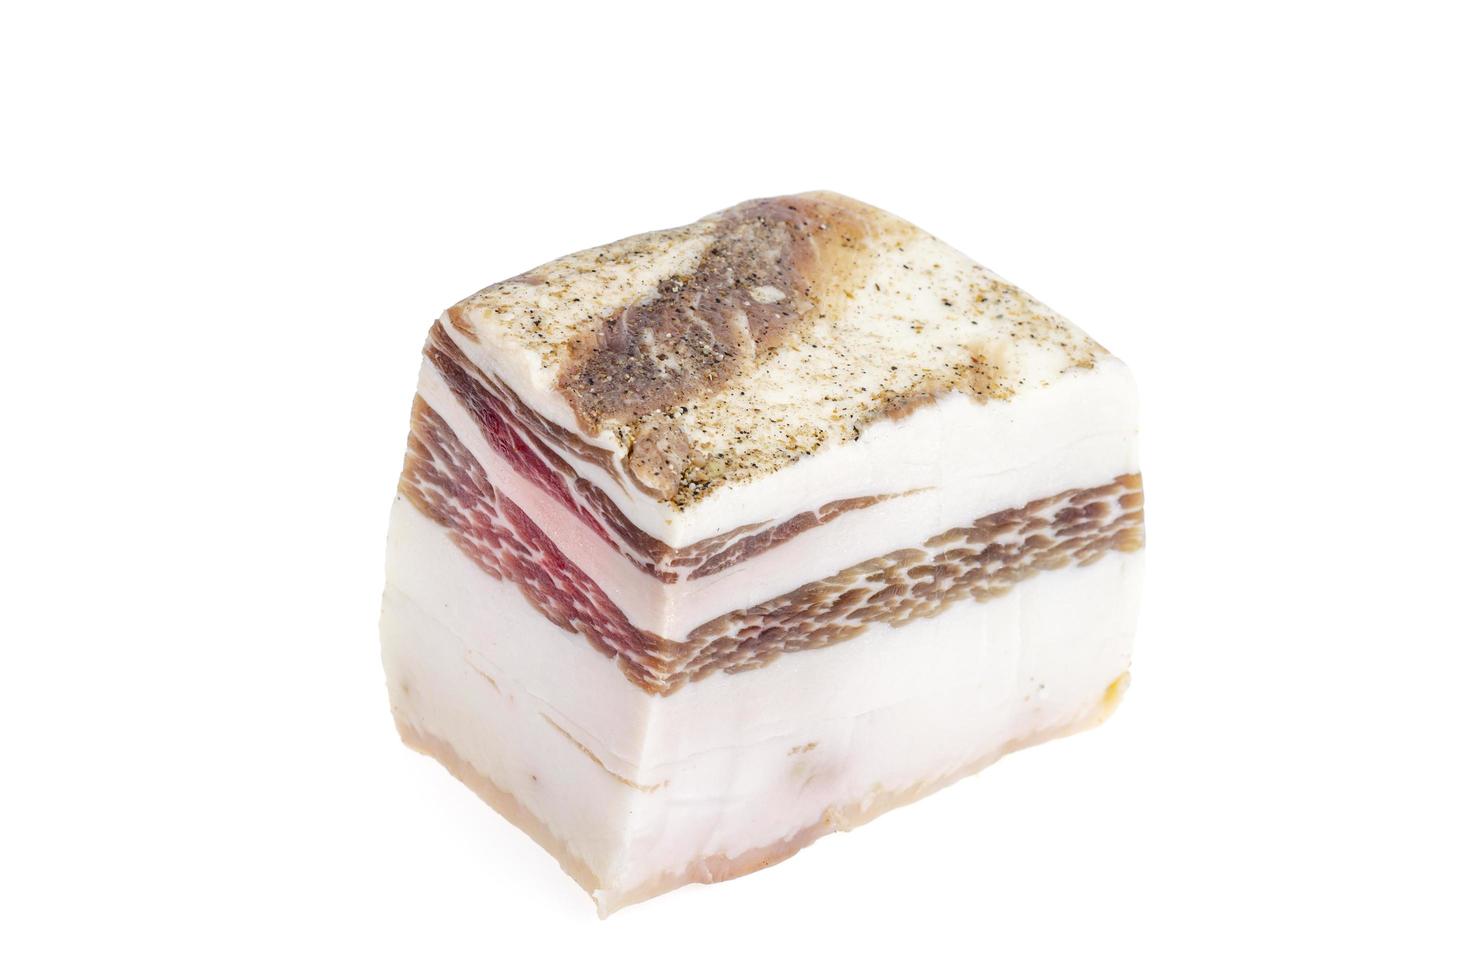 pedazo de panceta de cerdo salada aislado sobre fondo blanco, manteca de cerdo. foto